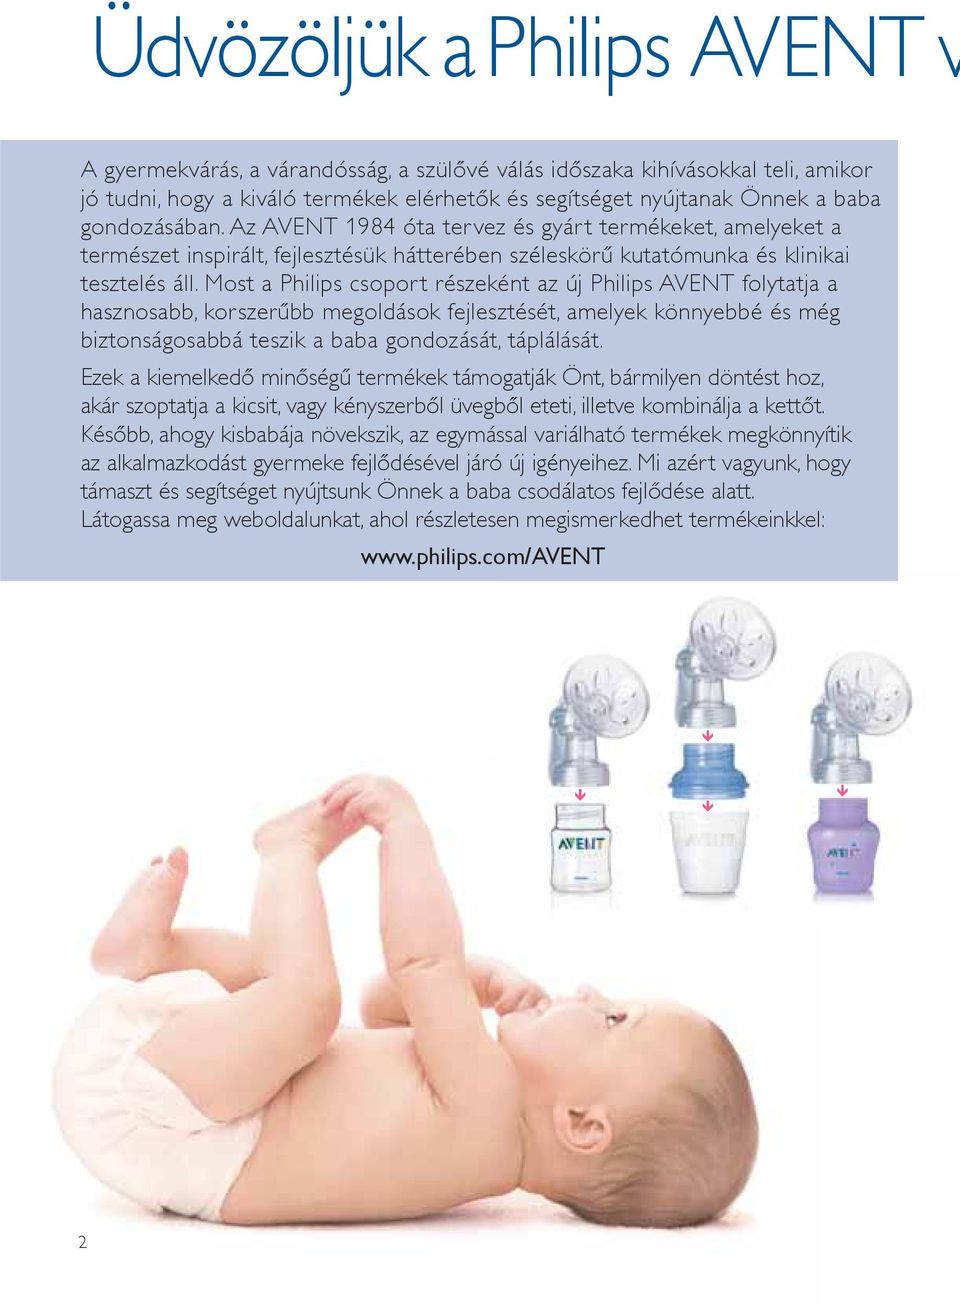 Most a Philips csoport részeként az új Philips AVENT folytatja a hasznosabb, korszerűbb megoldások fejlesztését, amelyek könnyebbé és még biztonságosabbá teszik a baba gondozását, táplálását.